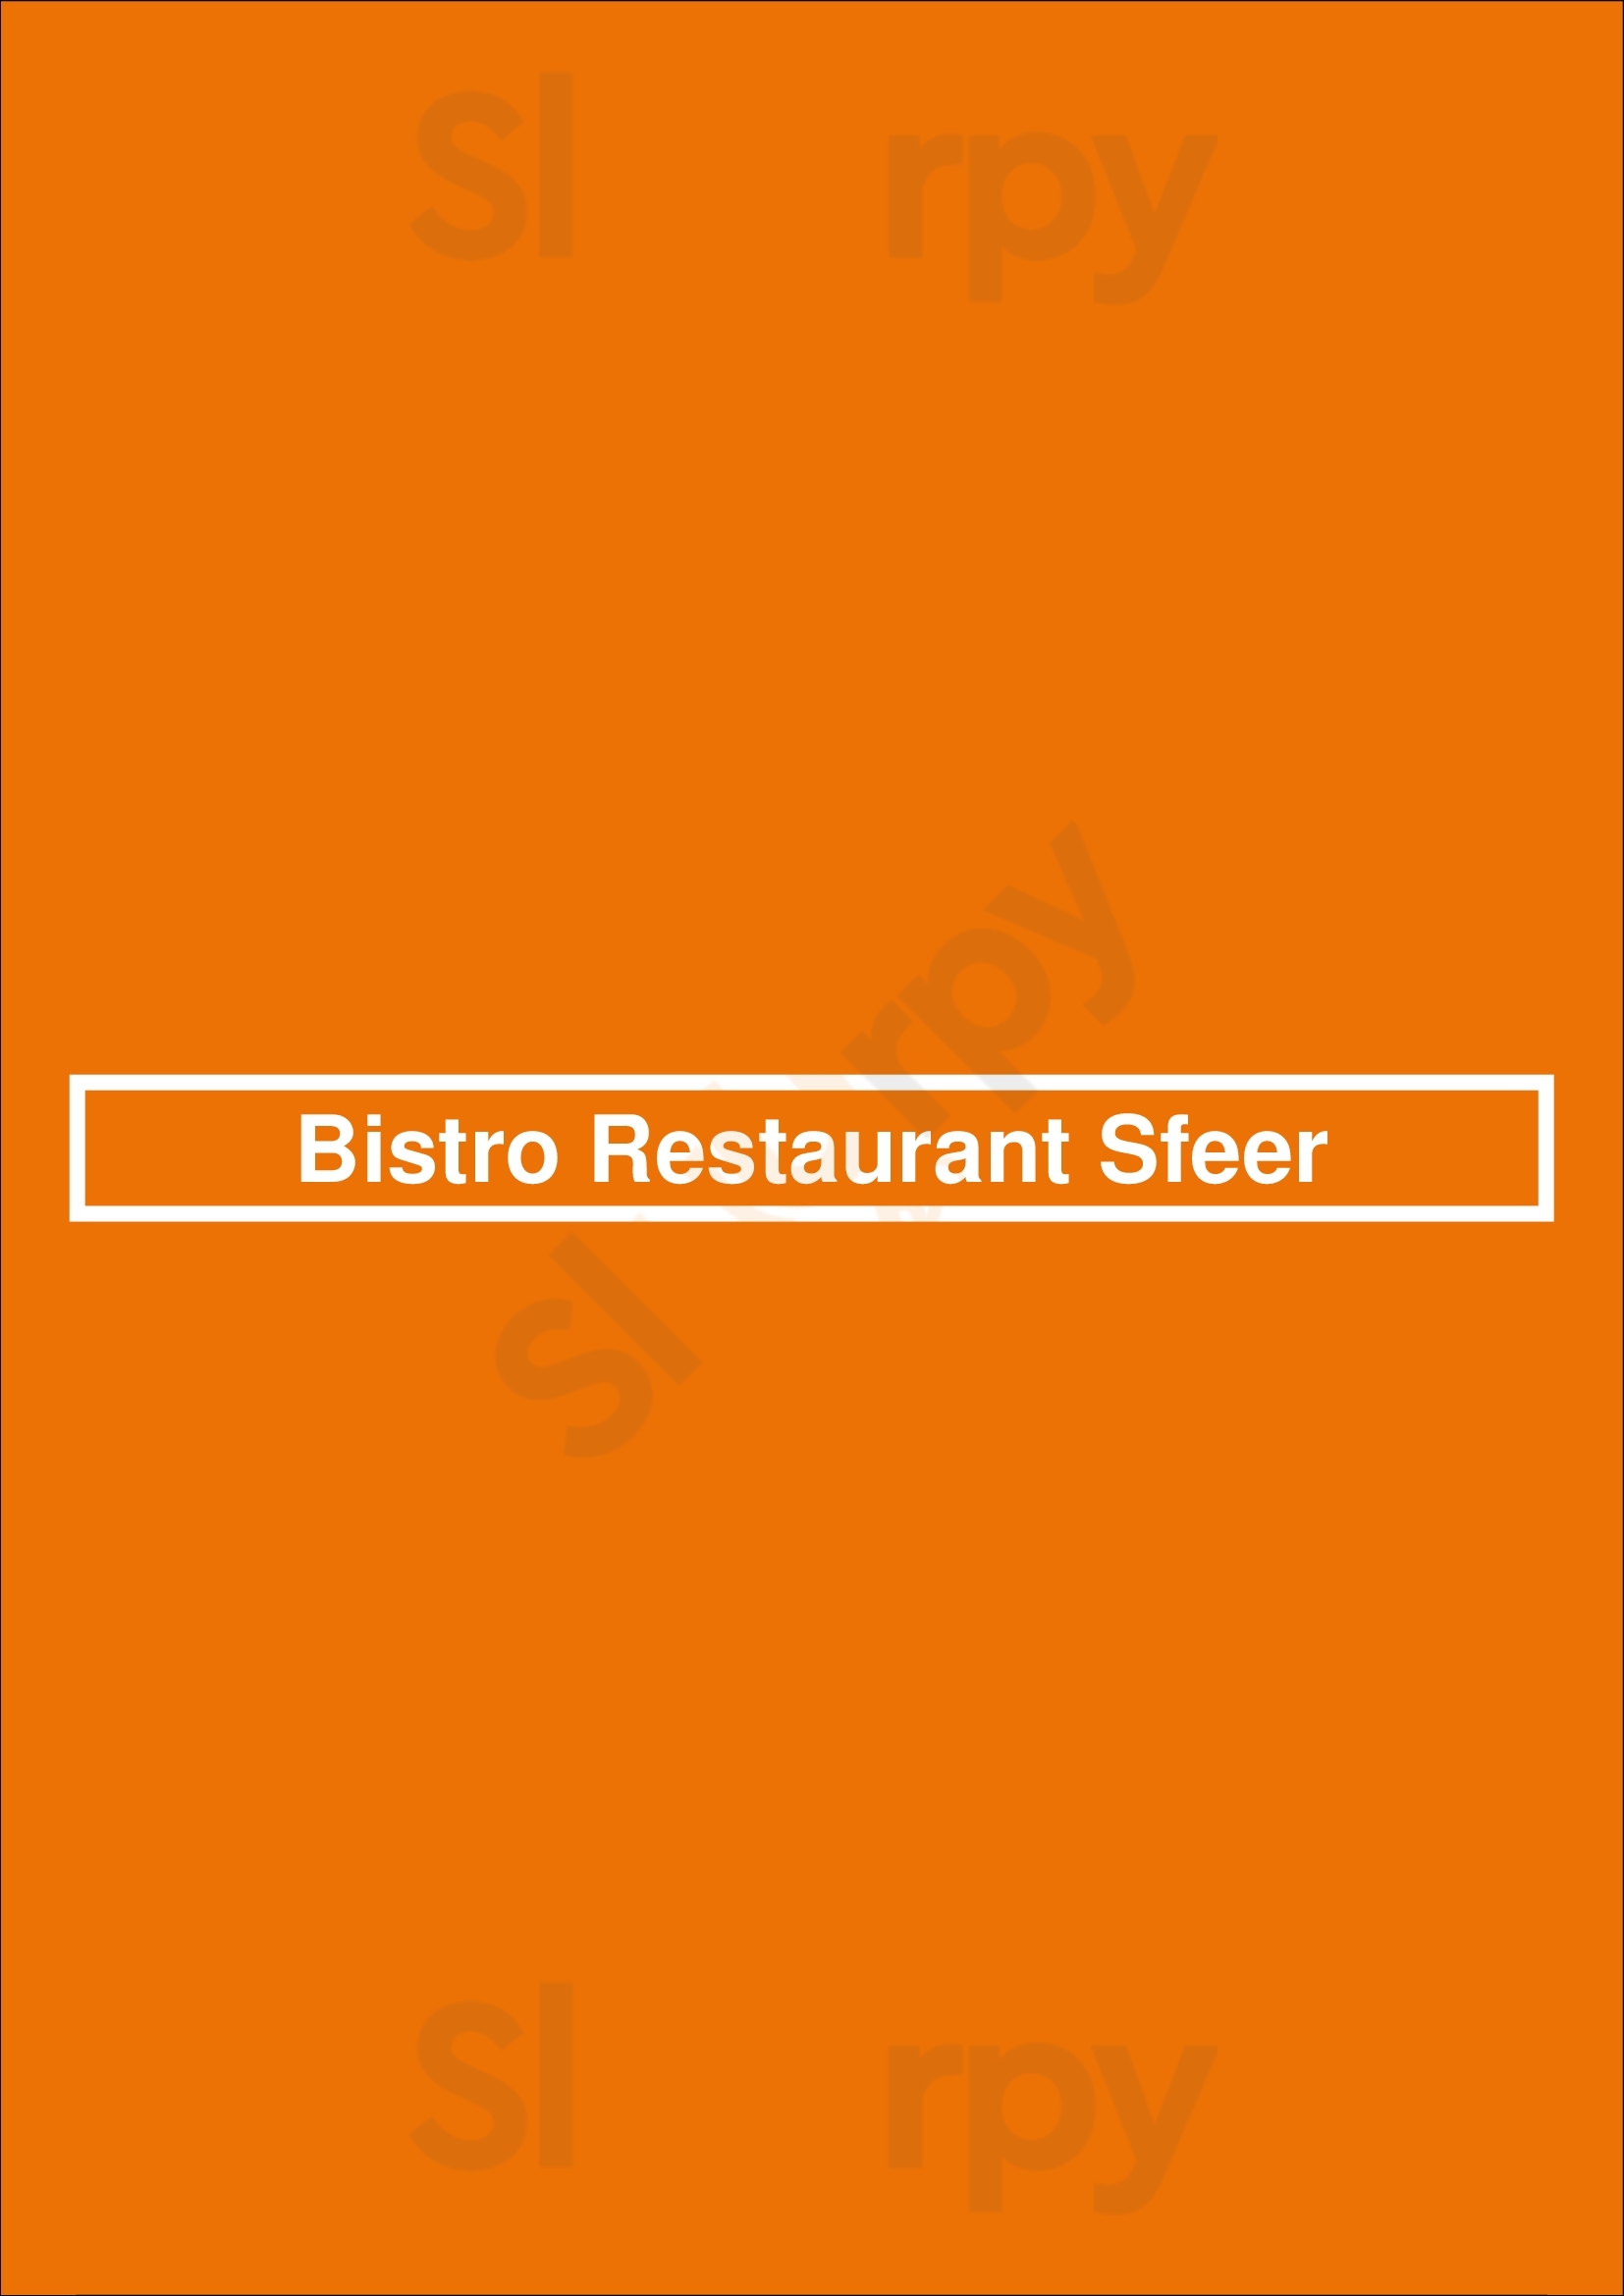 Bistro Restaurant Sfeer Naaldwijk Menu - 1